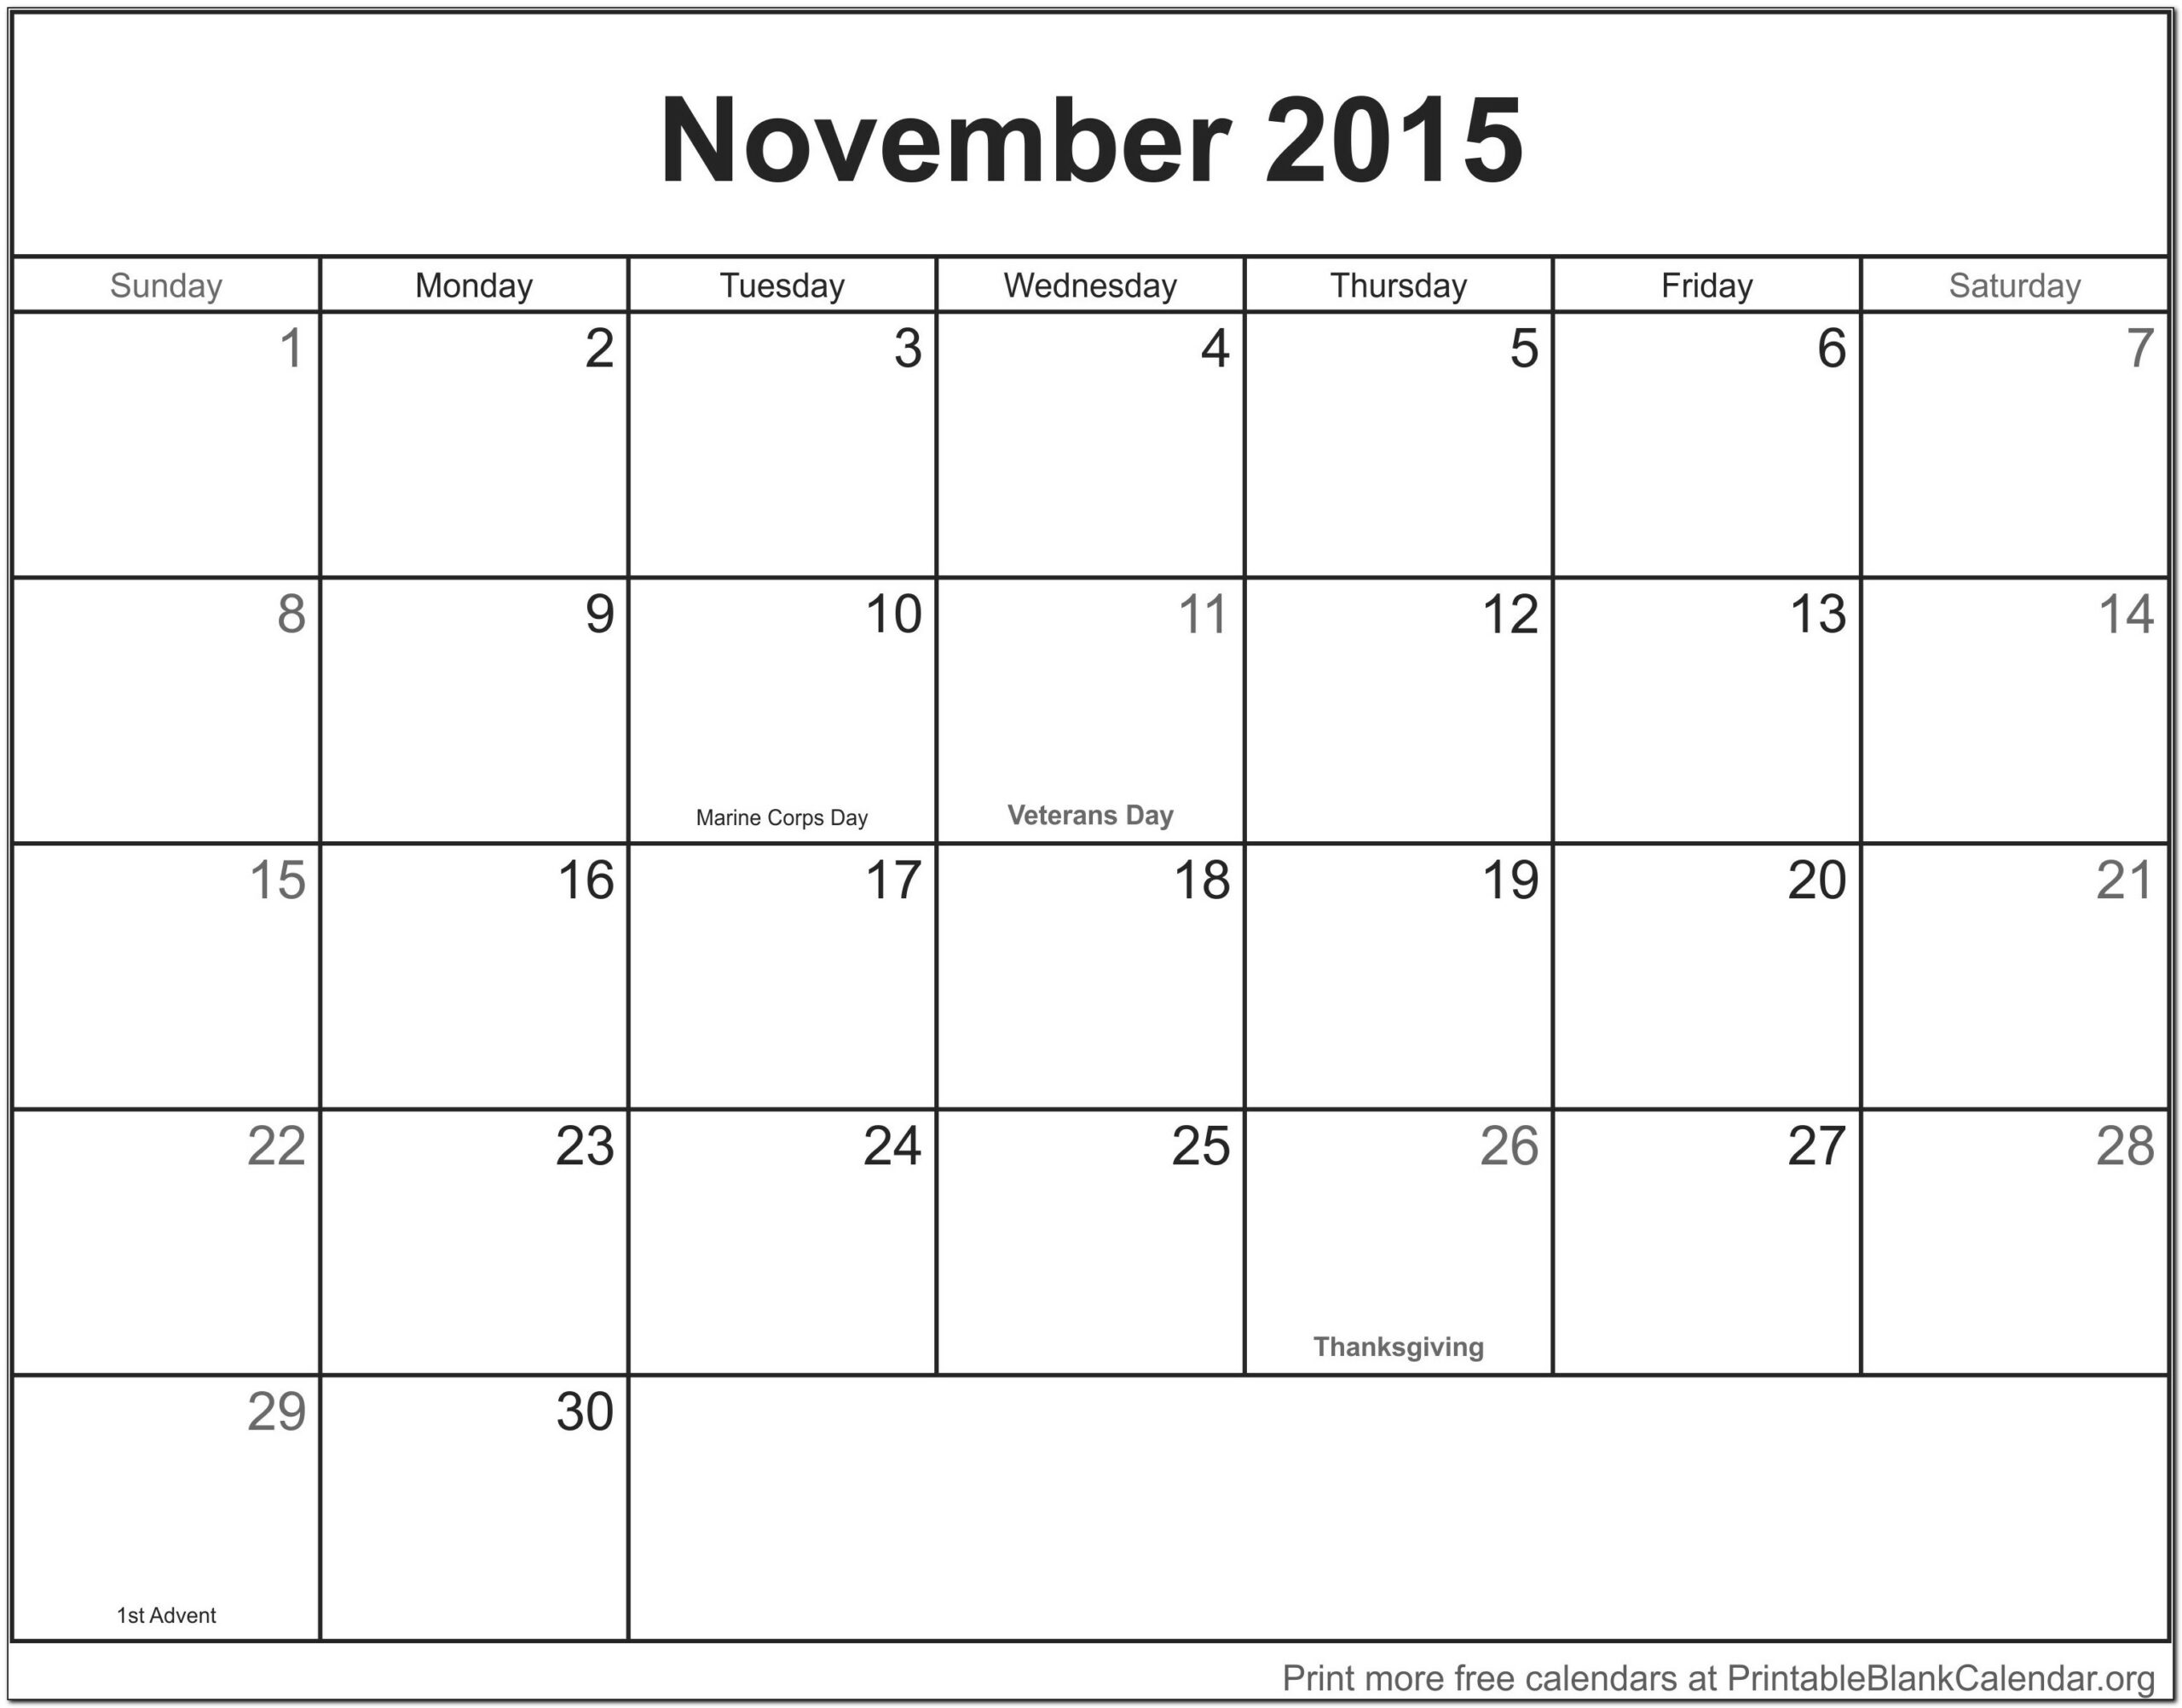 Customize Excel Calendar Template